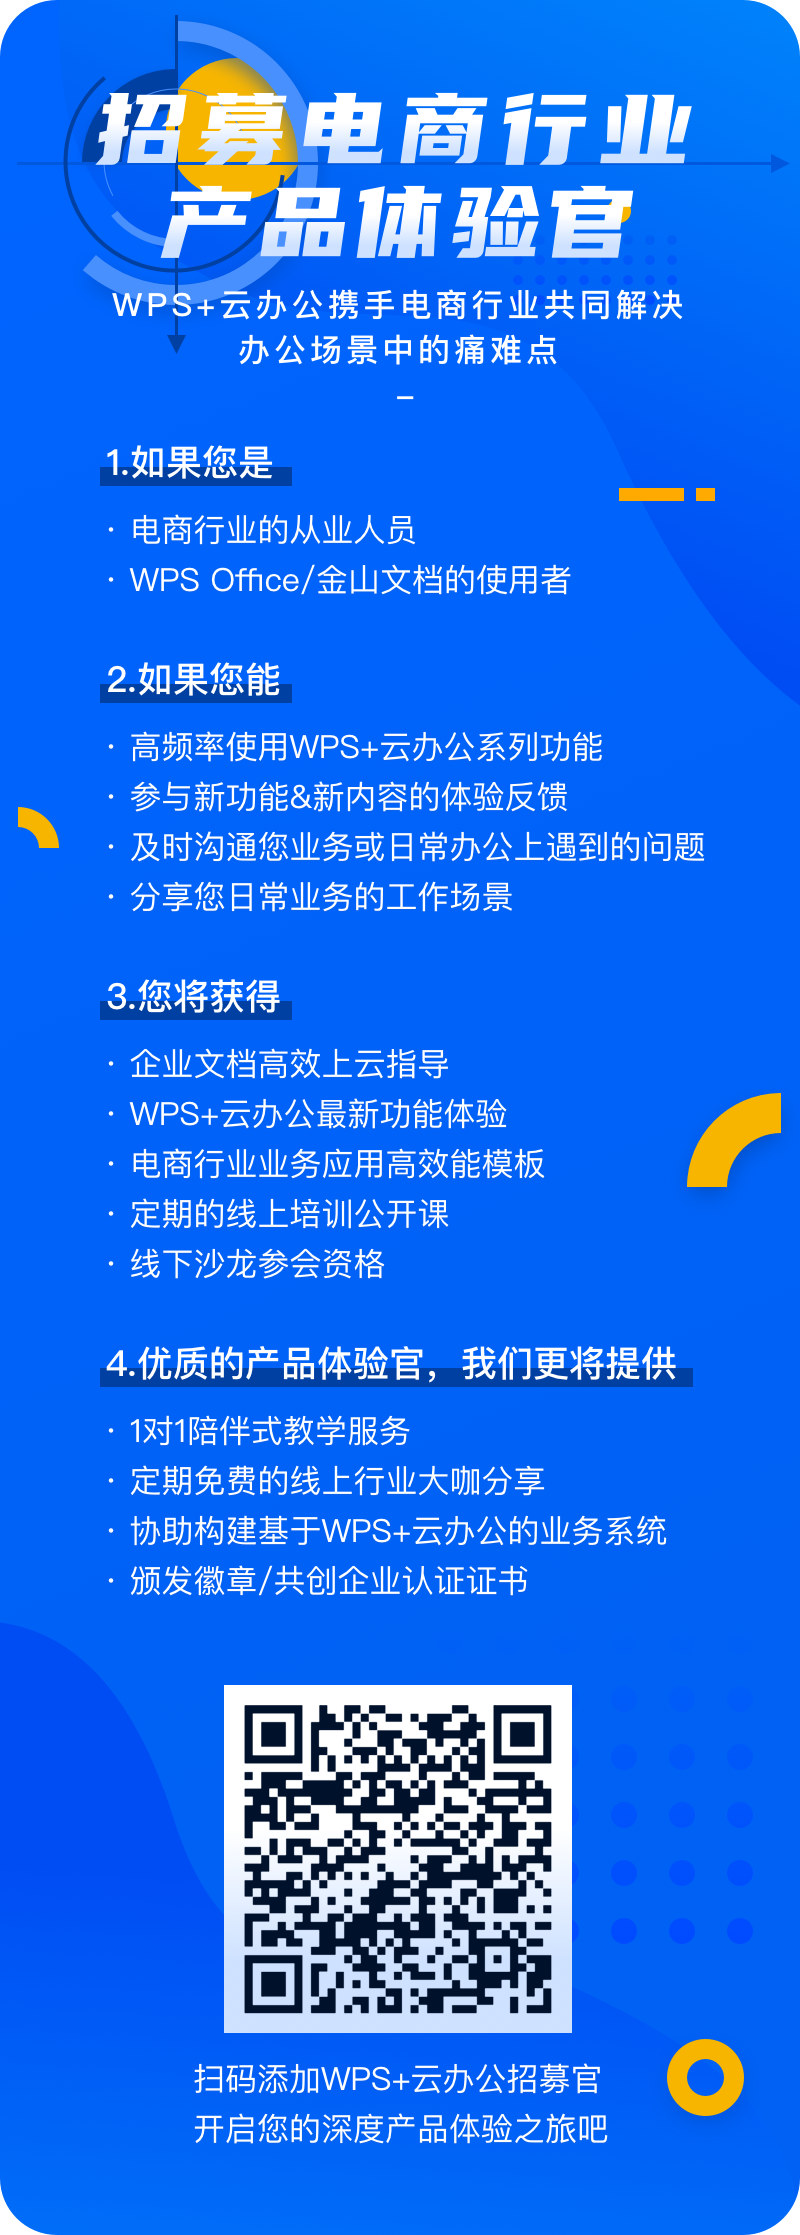 WPS+云办公：招募电商行业产品体验官